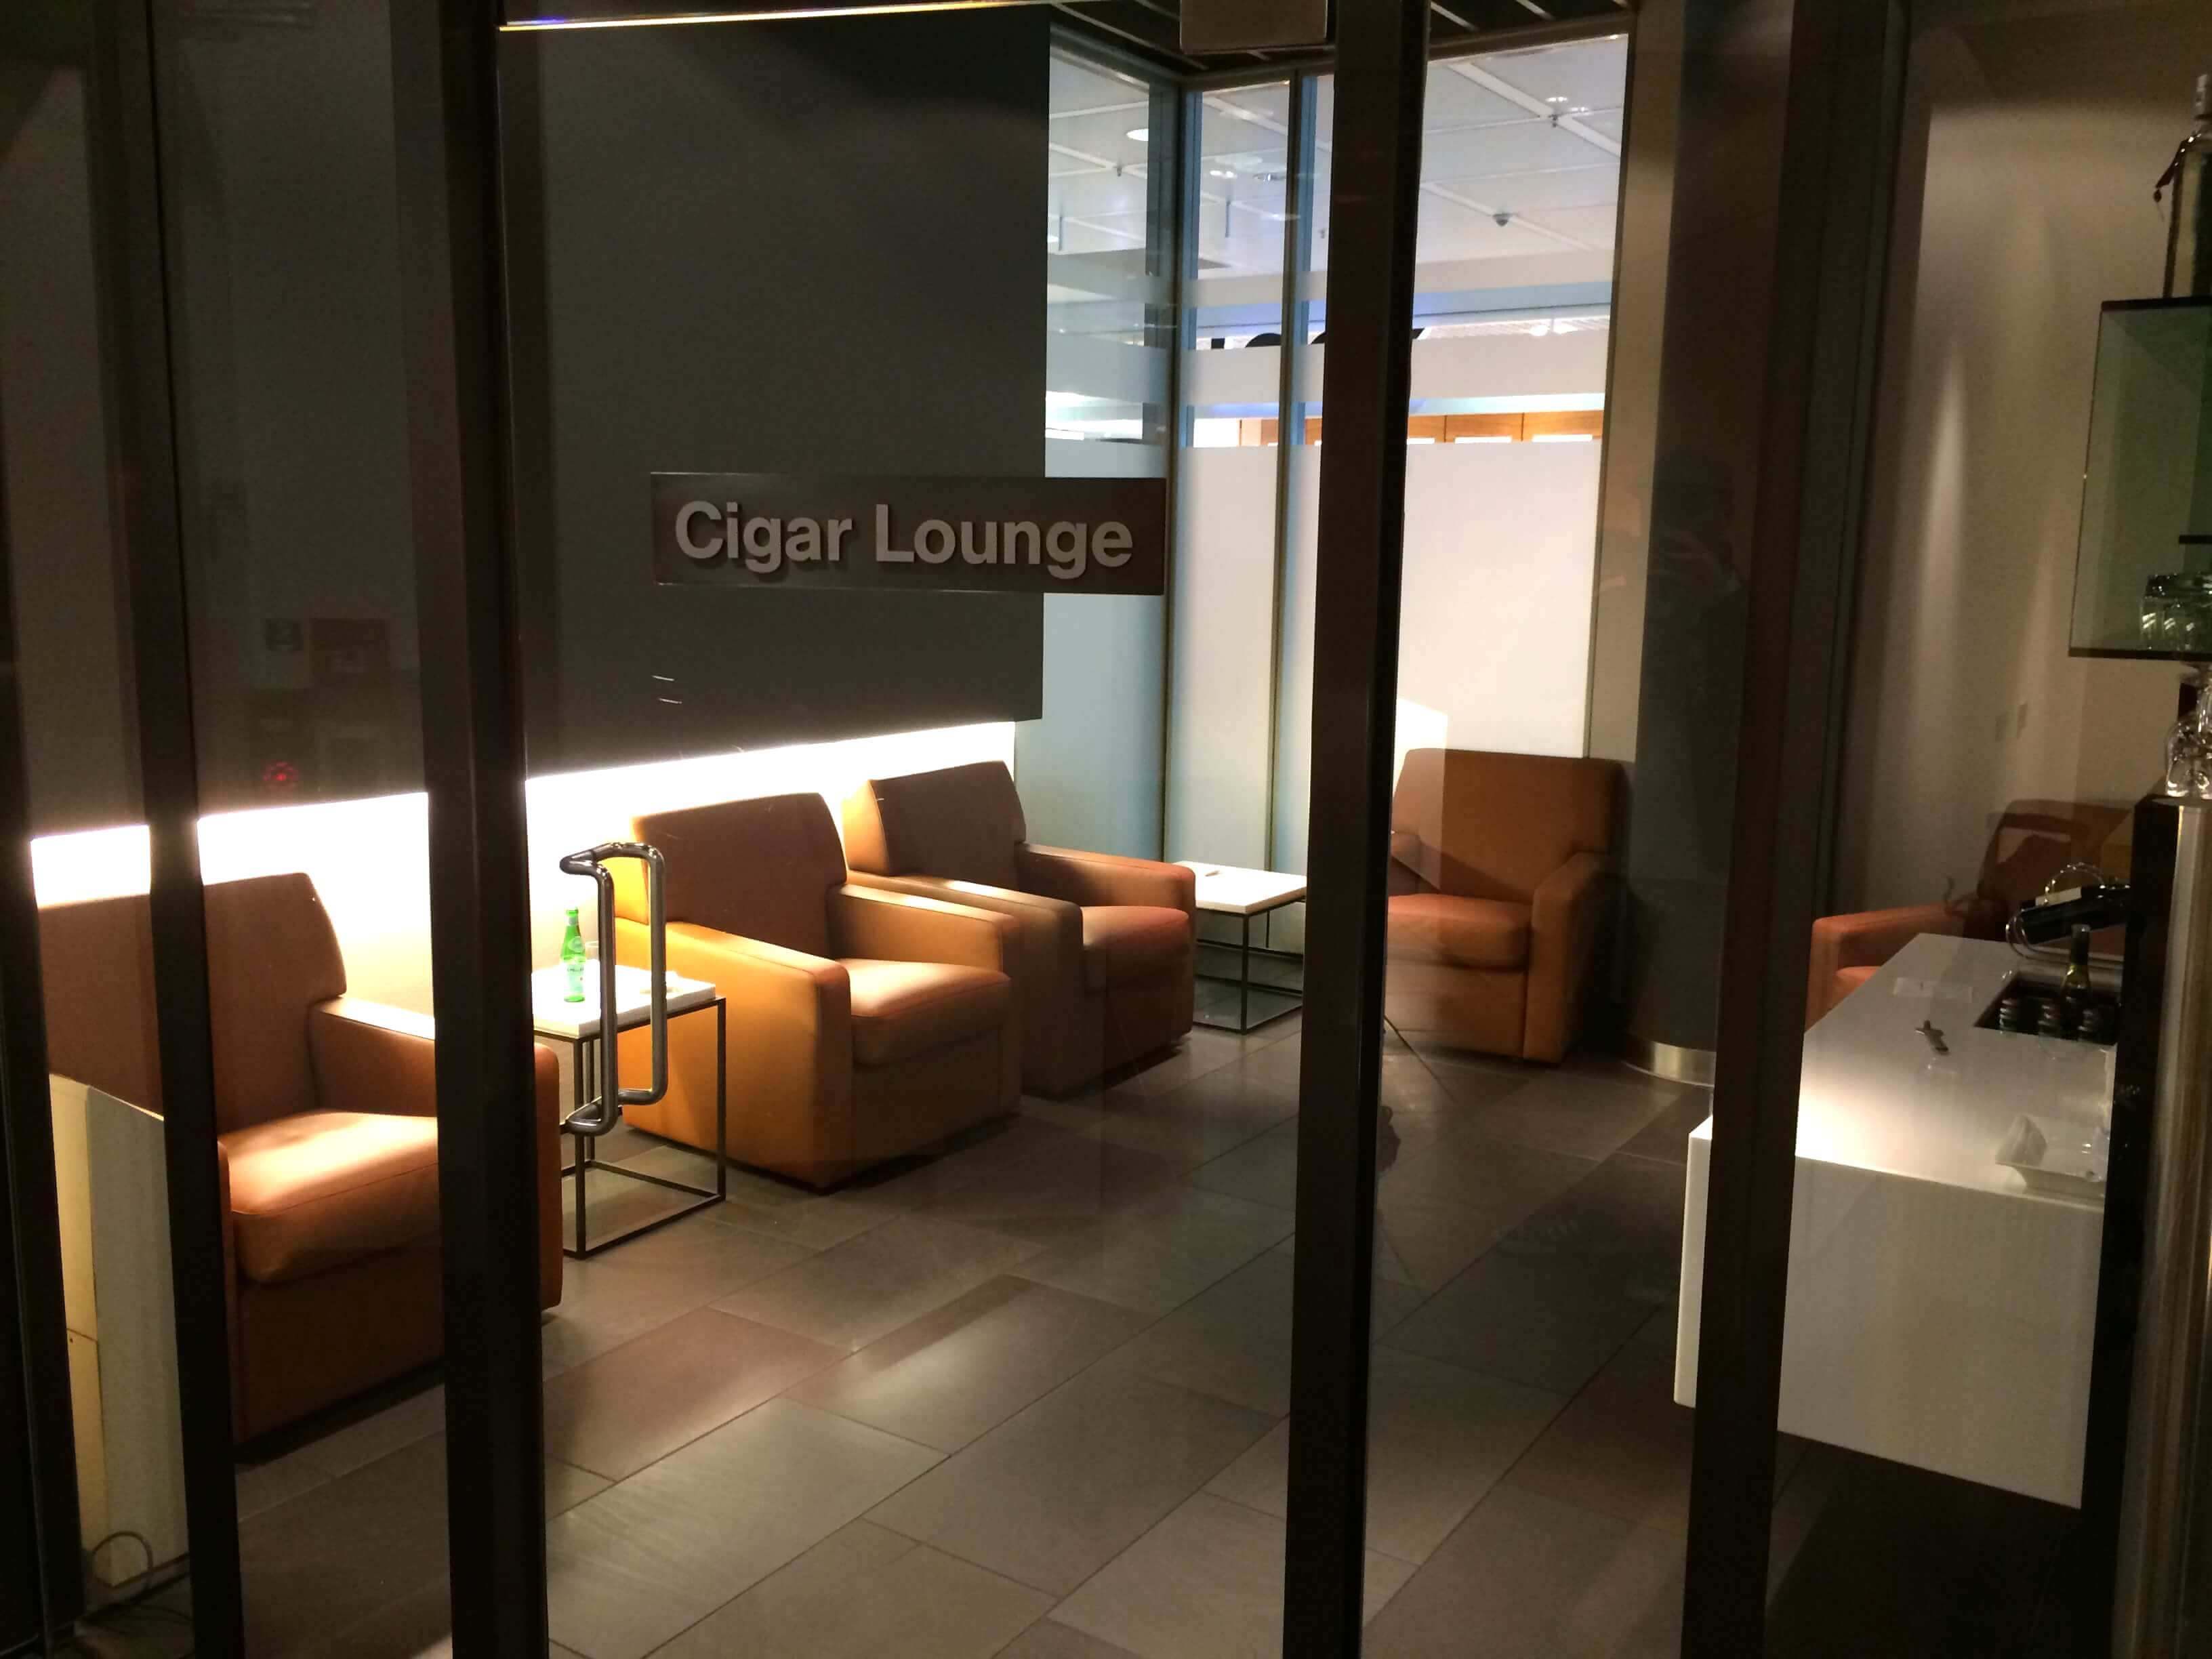 Cigar Lounge, Lufthansa first class lounge Munich